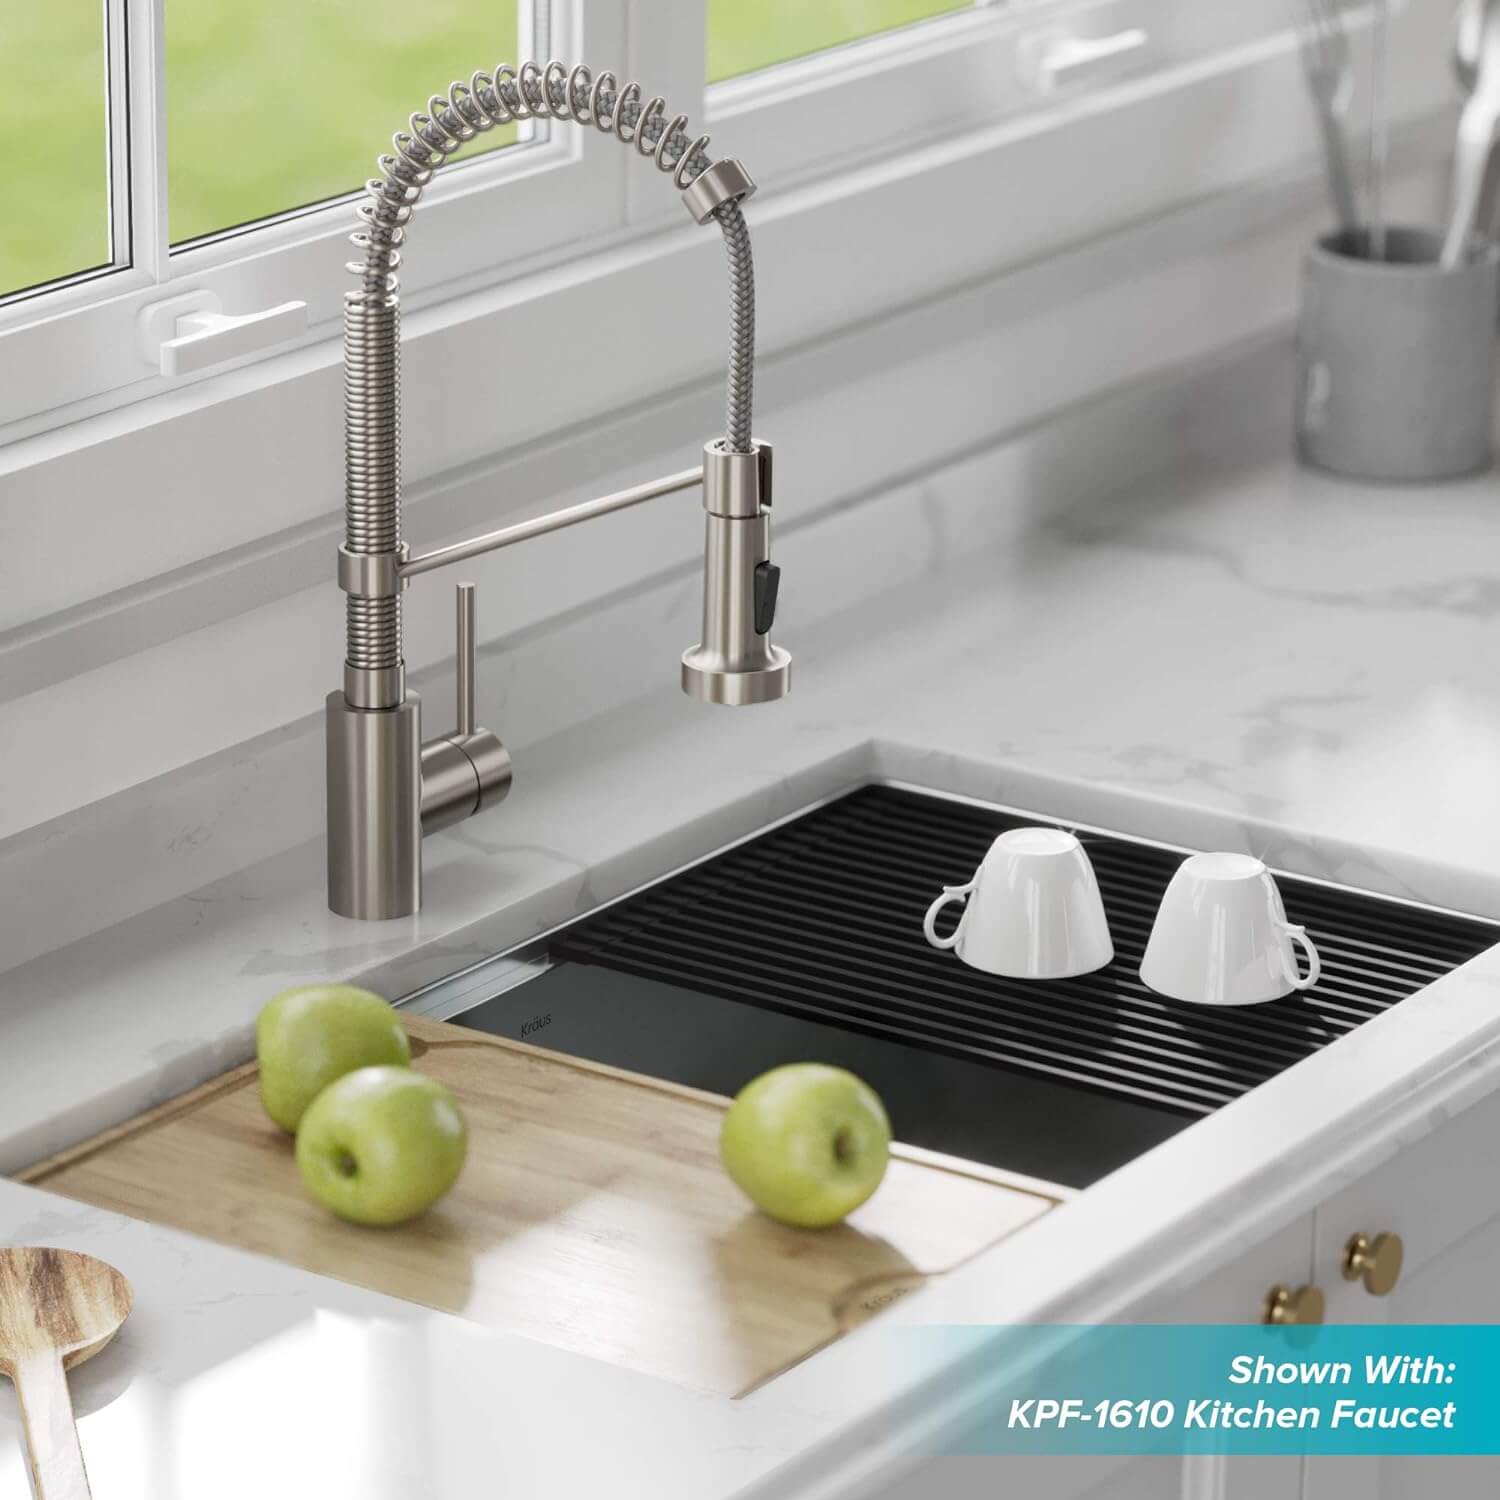 Kraus 110-32 Undermount Single Bowl Stainless Steel Kitchen Sink